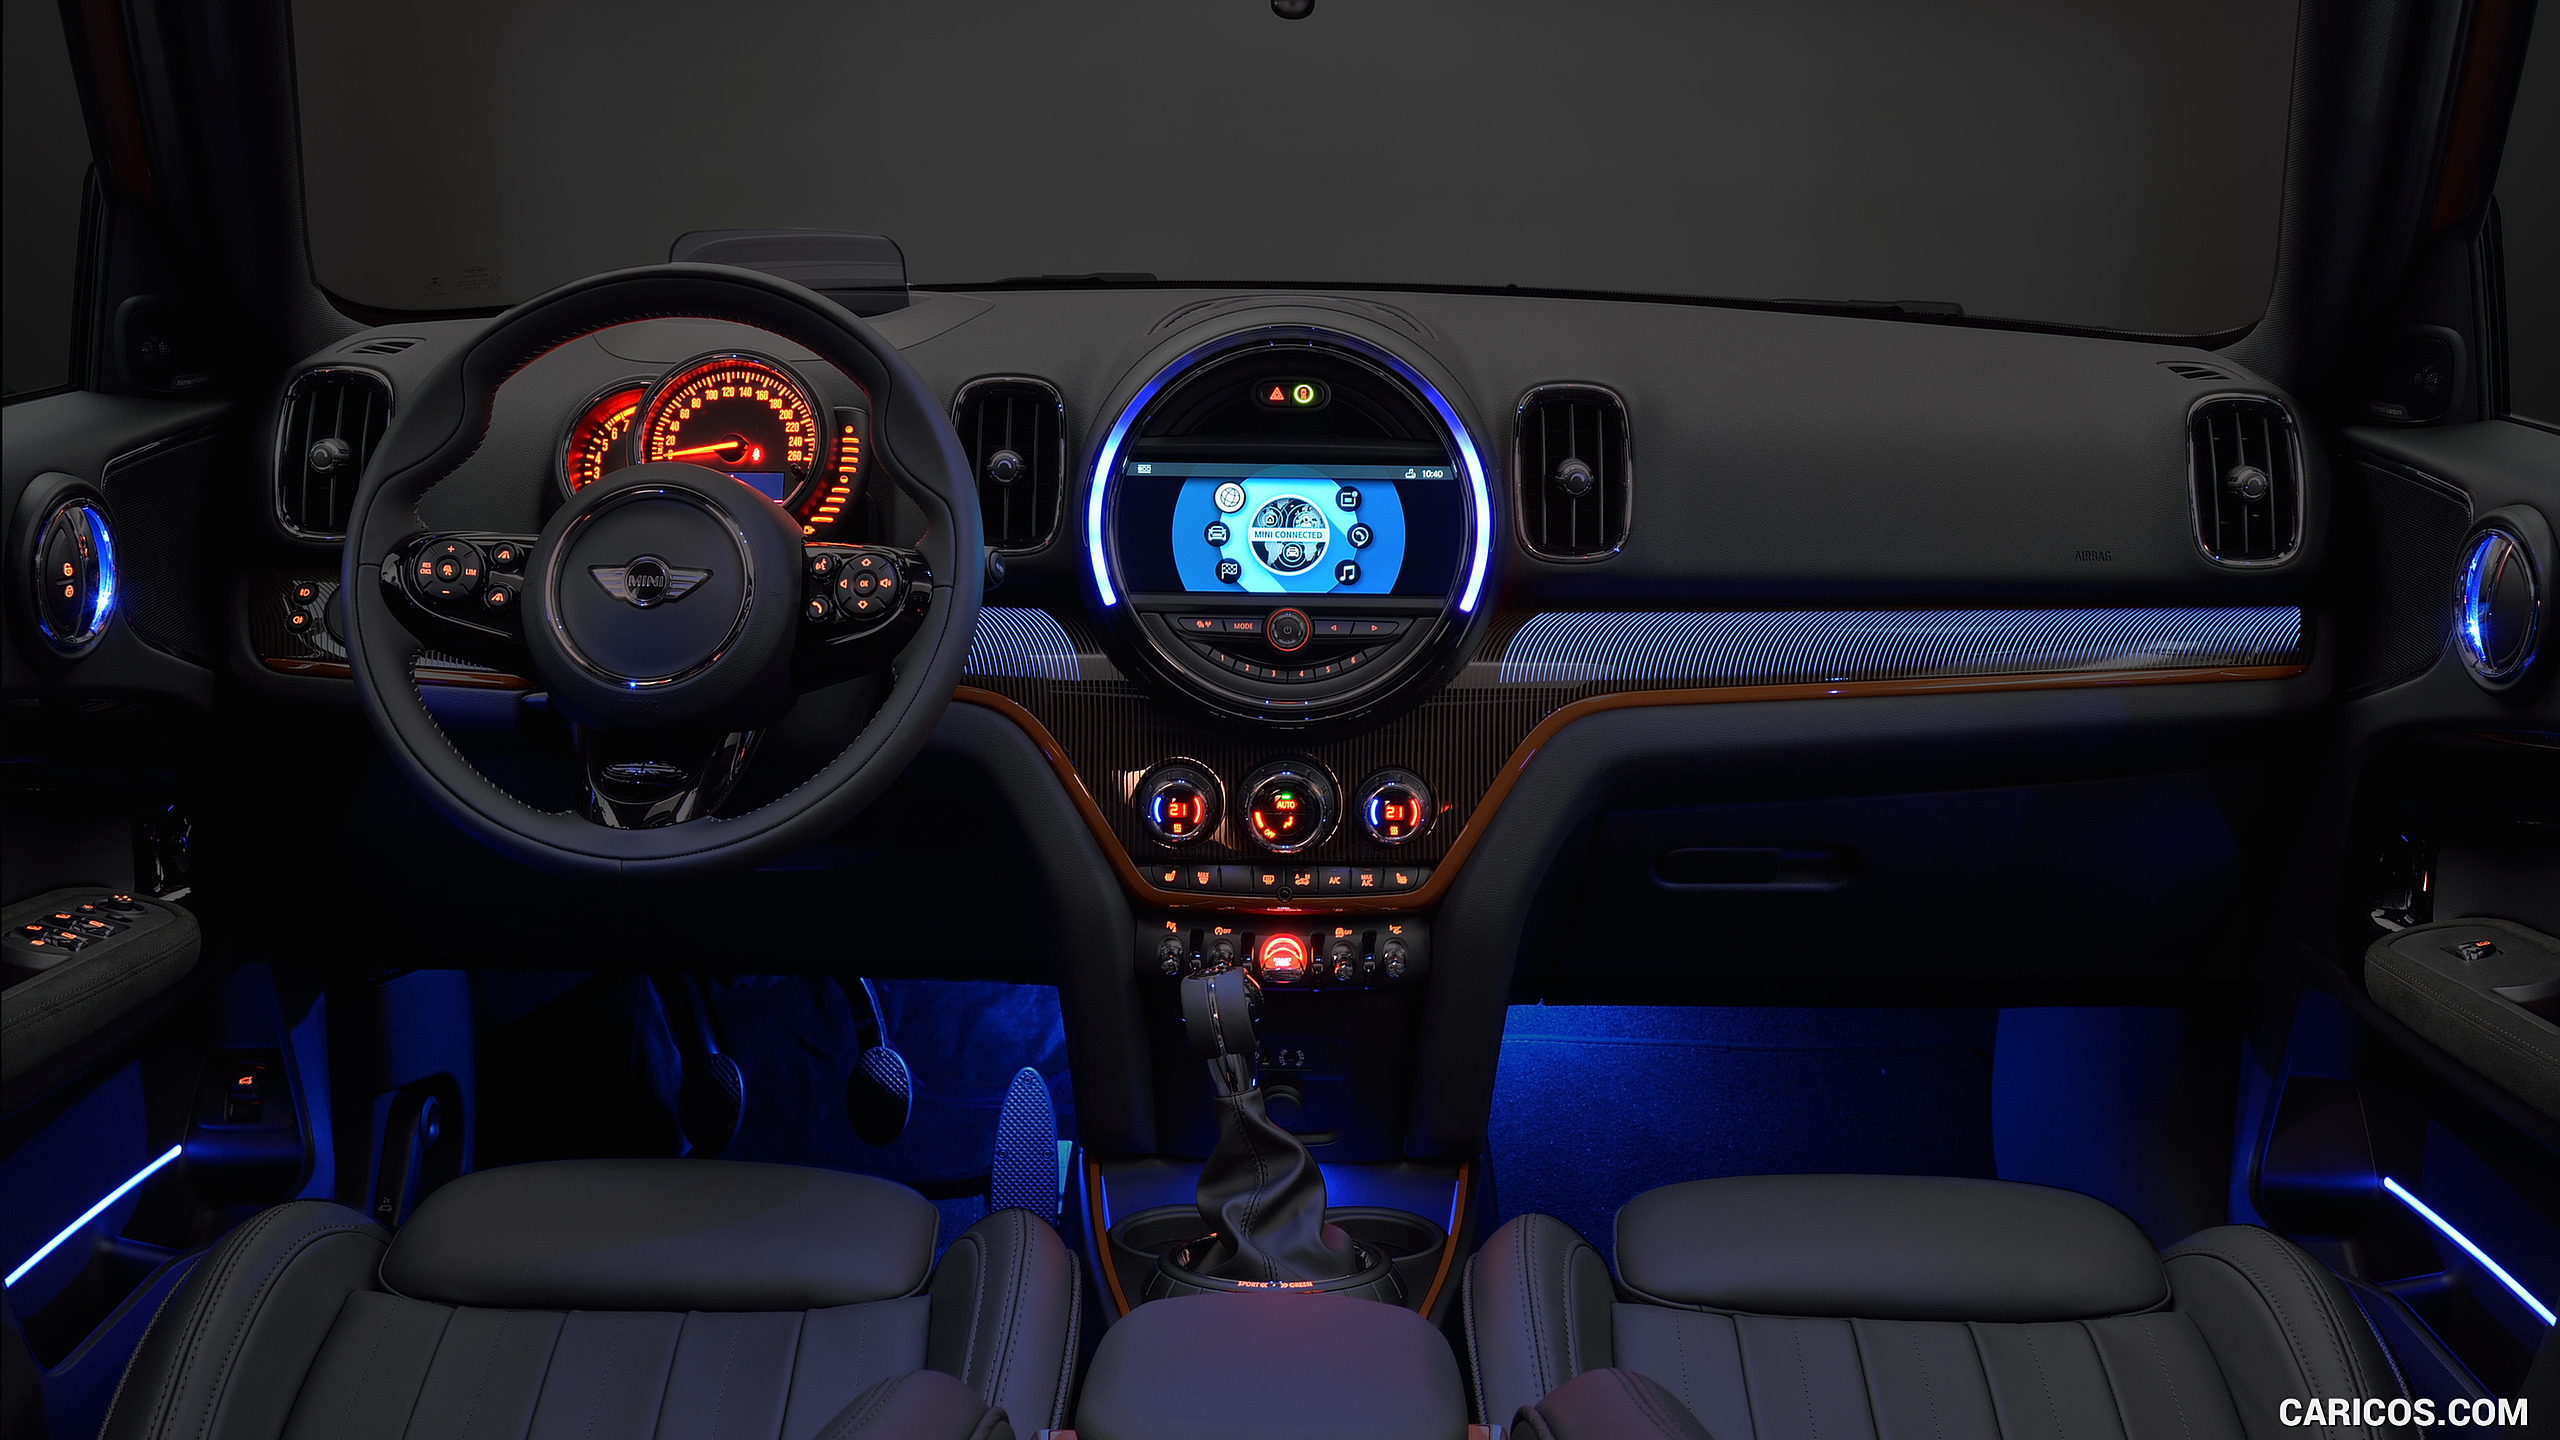 2017 MINI Cooper S Countryman ALL4 - Interior Illumination, #117 of 372